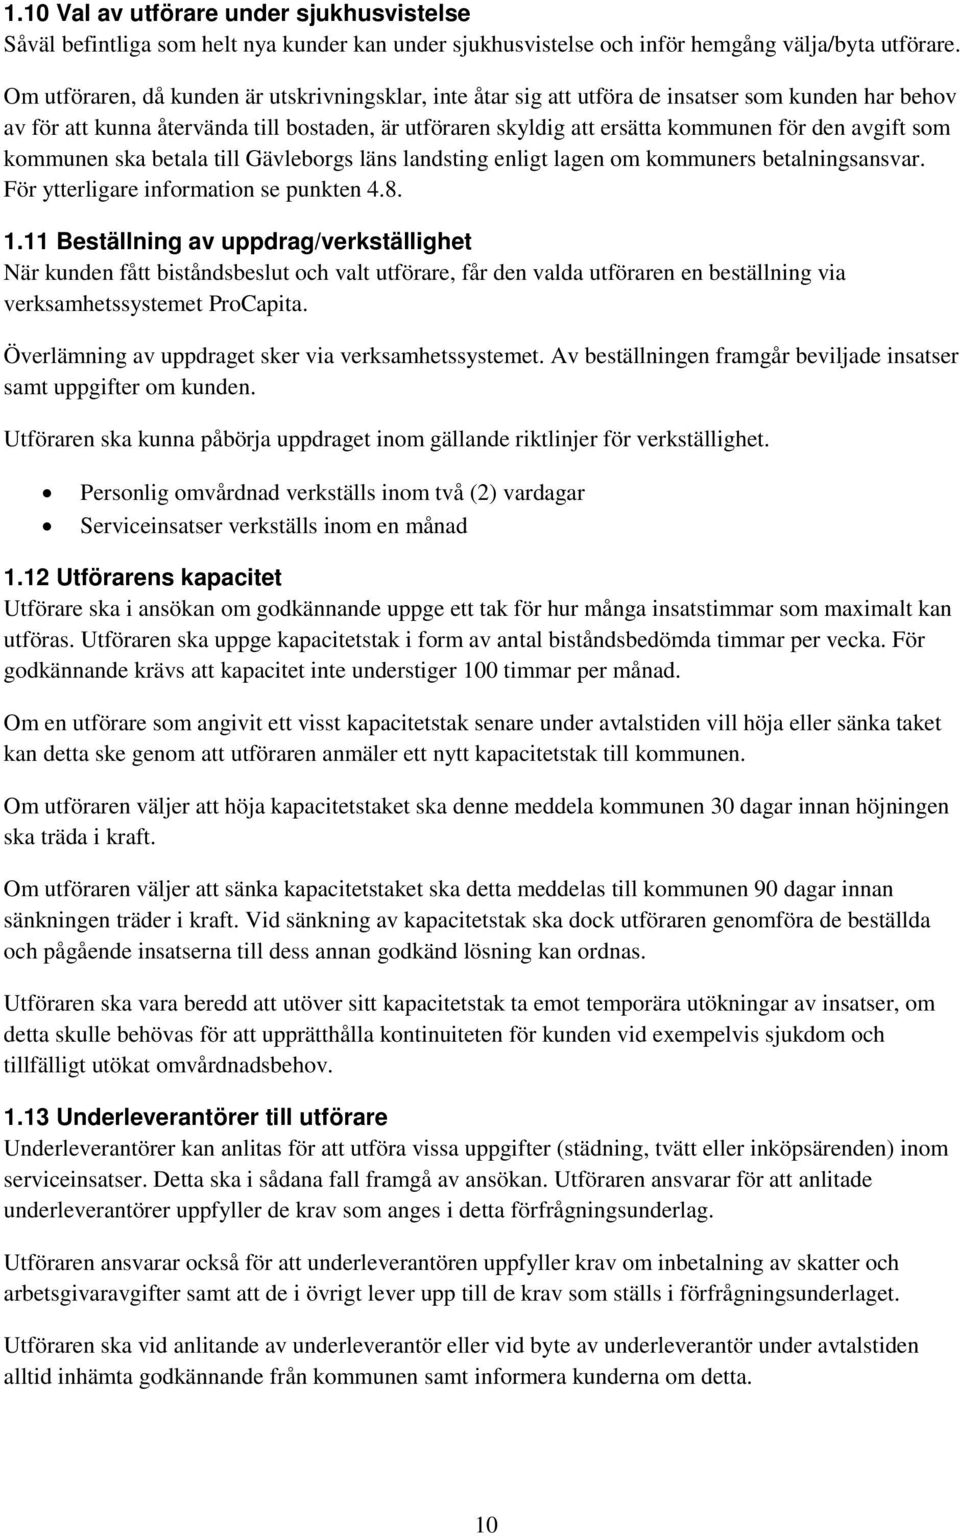 avgift som kommunen ska betala till Gävleborgs läns landsting enligt lagen om kommuners betalningsansvar. För ytterligare information se punkten 4.8. 1.